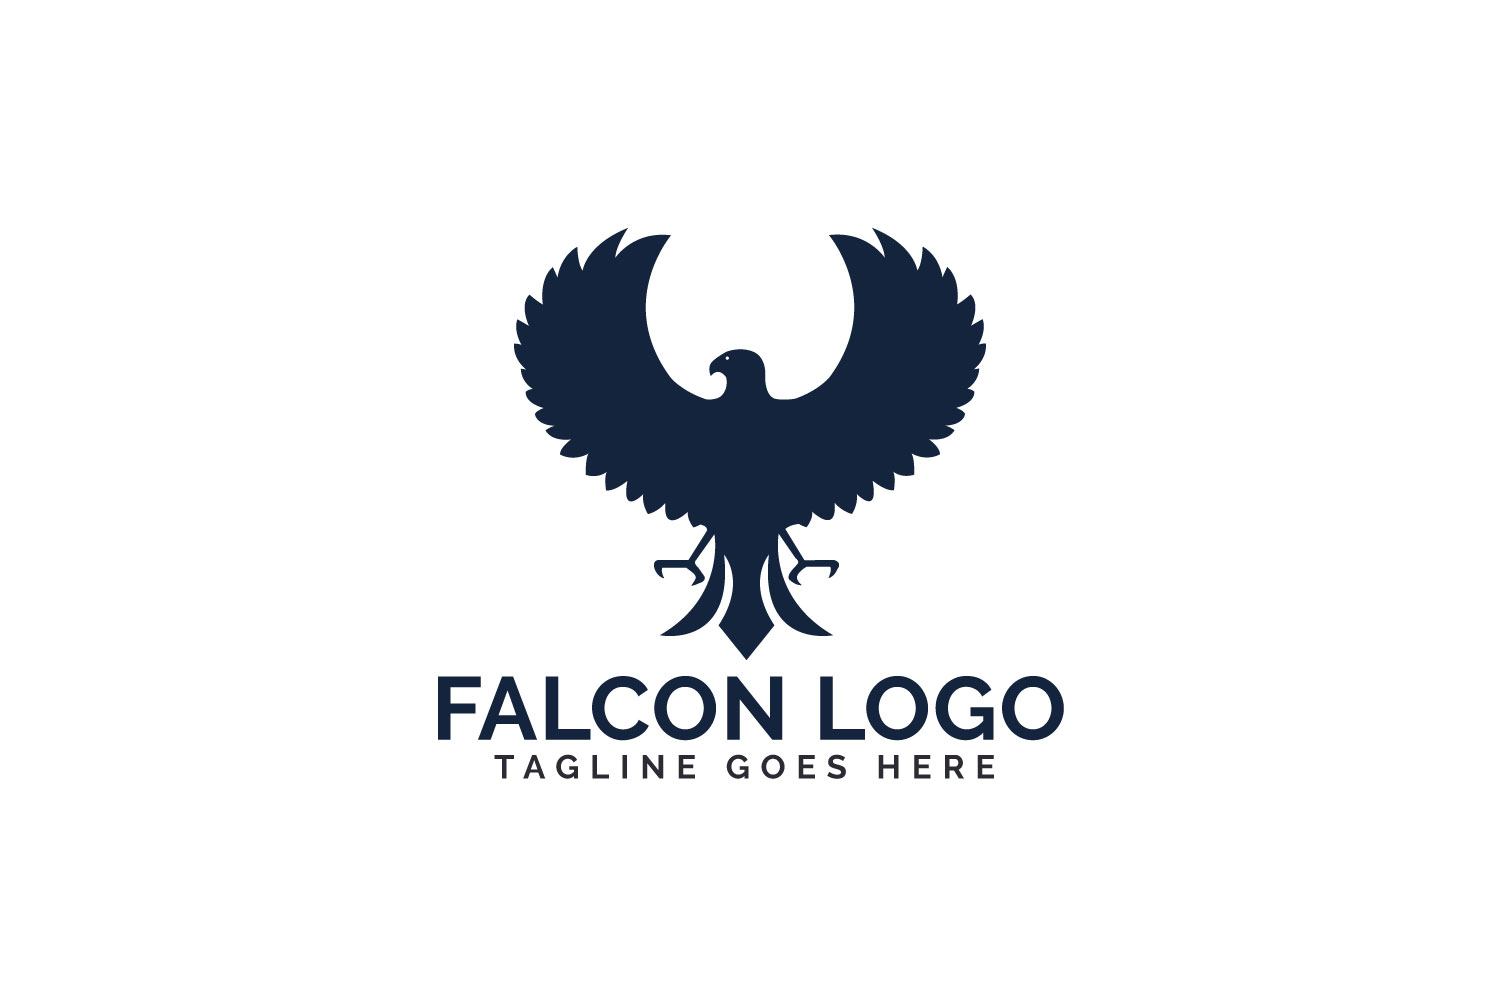 Falcon logo design.